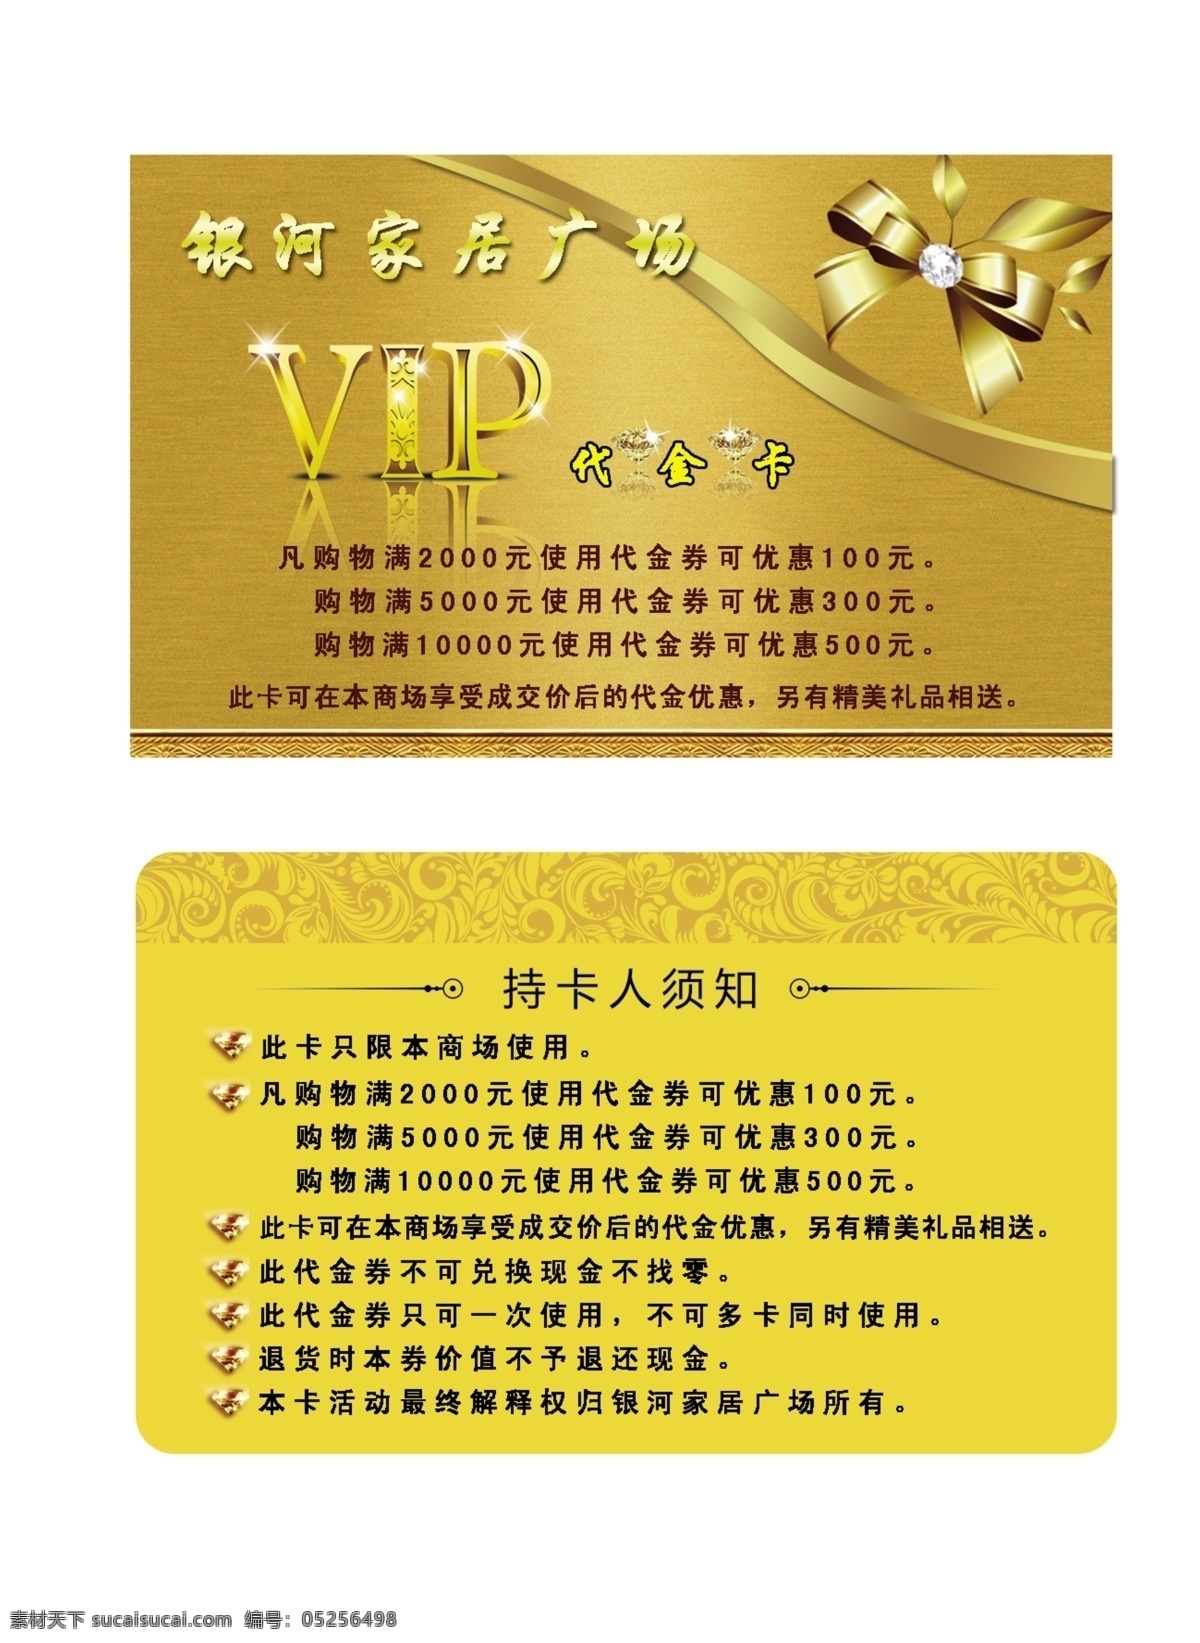 金色 vip 会员卡 银河家居广场 名片卡片 广告设计模板 源文件